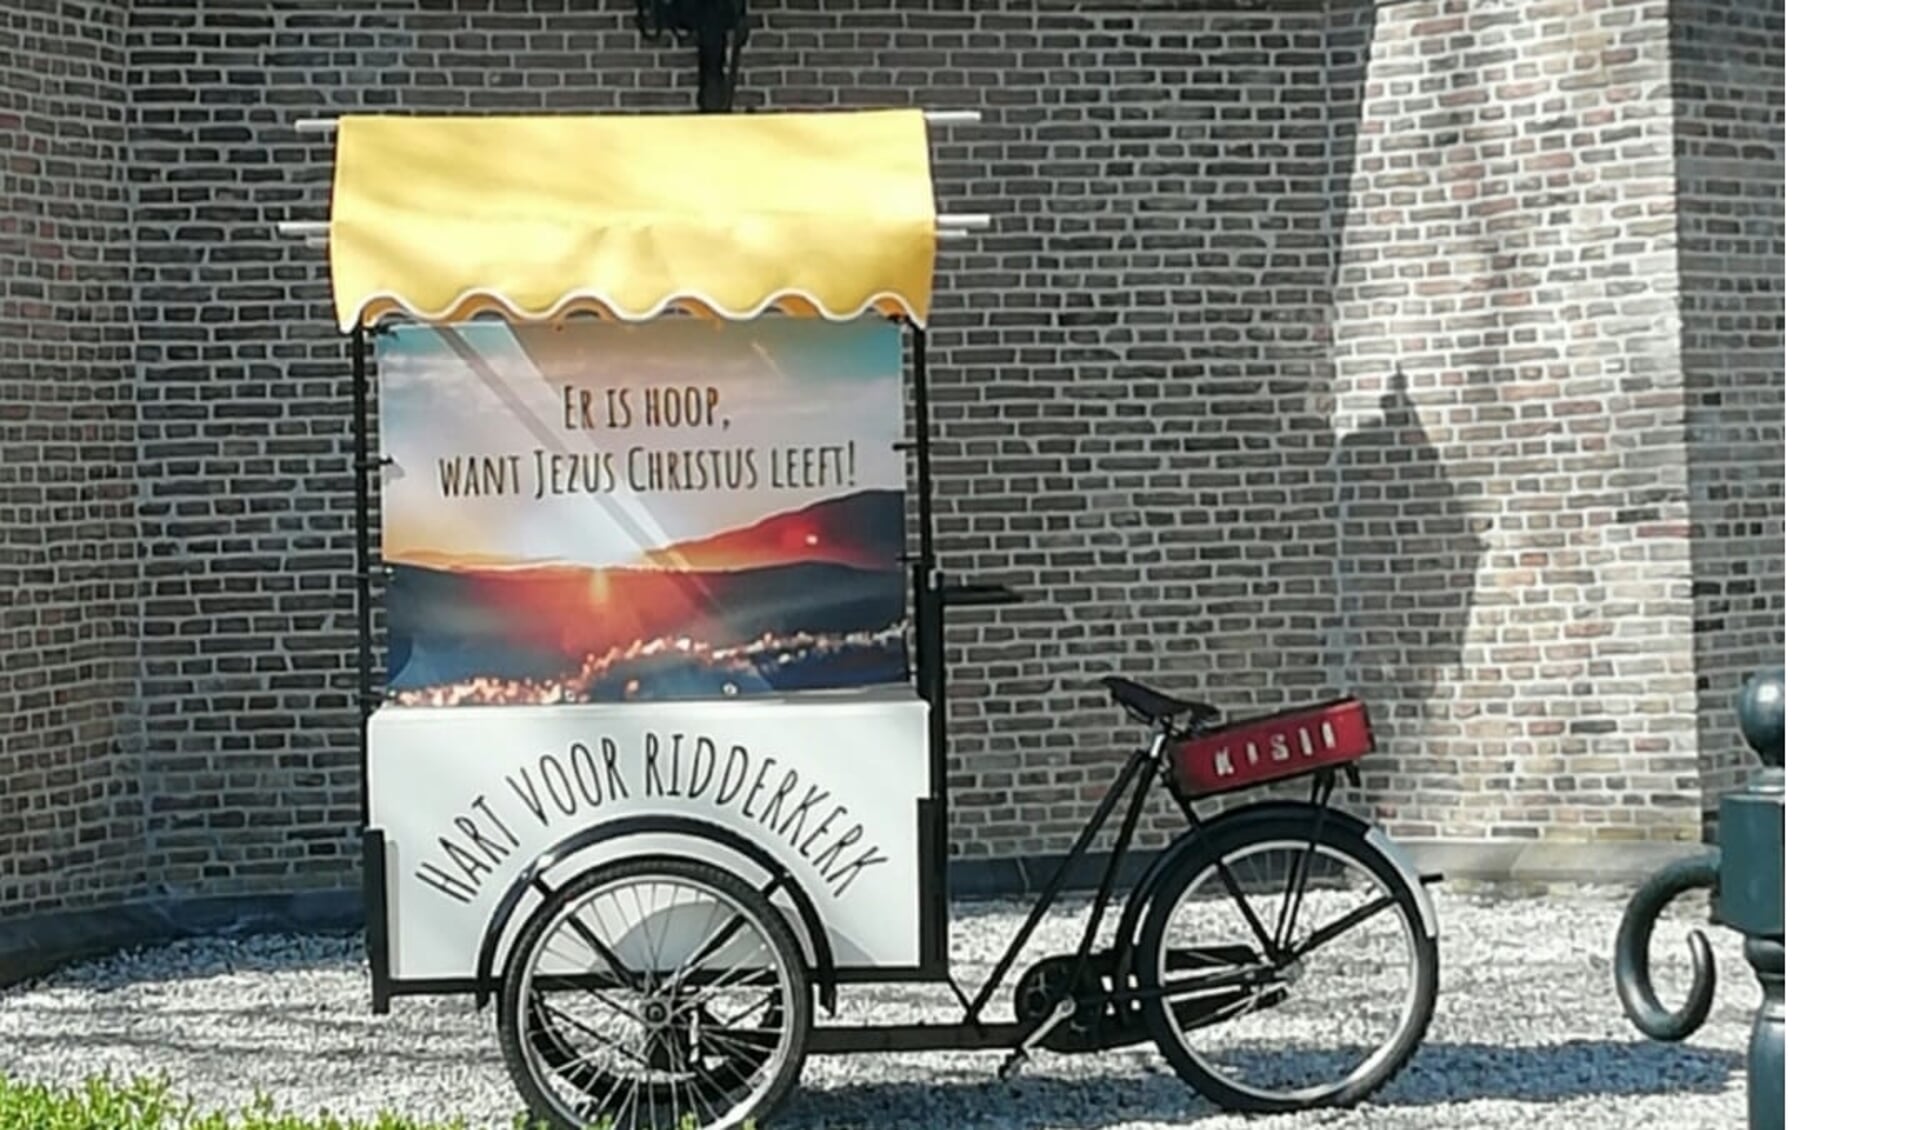 Ook de fietskar word ingezet voor de Paasactie